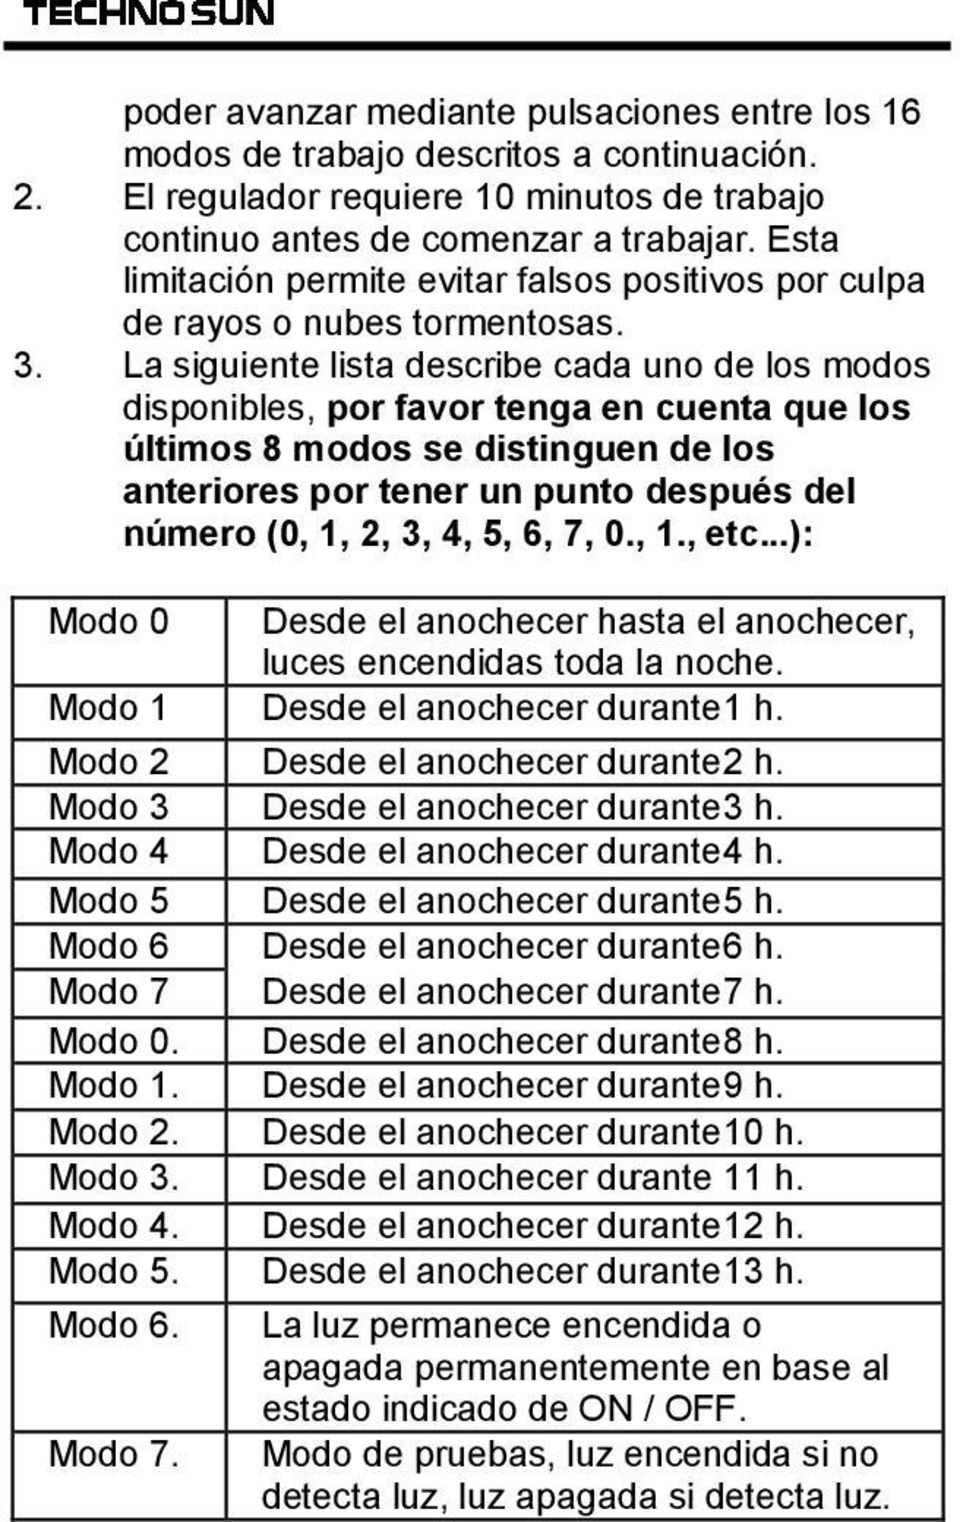 La siguiente lista describe cada uno de los modos disponibles, por favor tenga en cuenta que los últimos 8 modos se distinguen de los anteriores por tener un punto después del número (0, 1, 2, 3, 4,